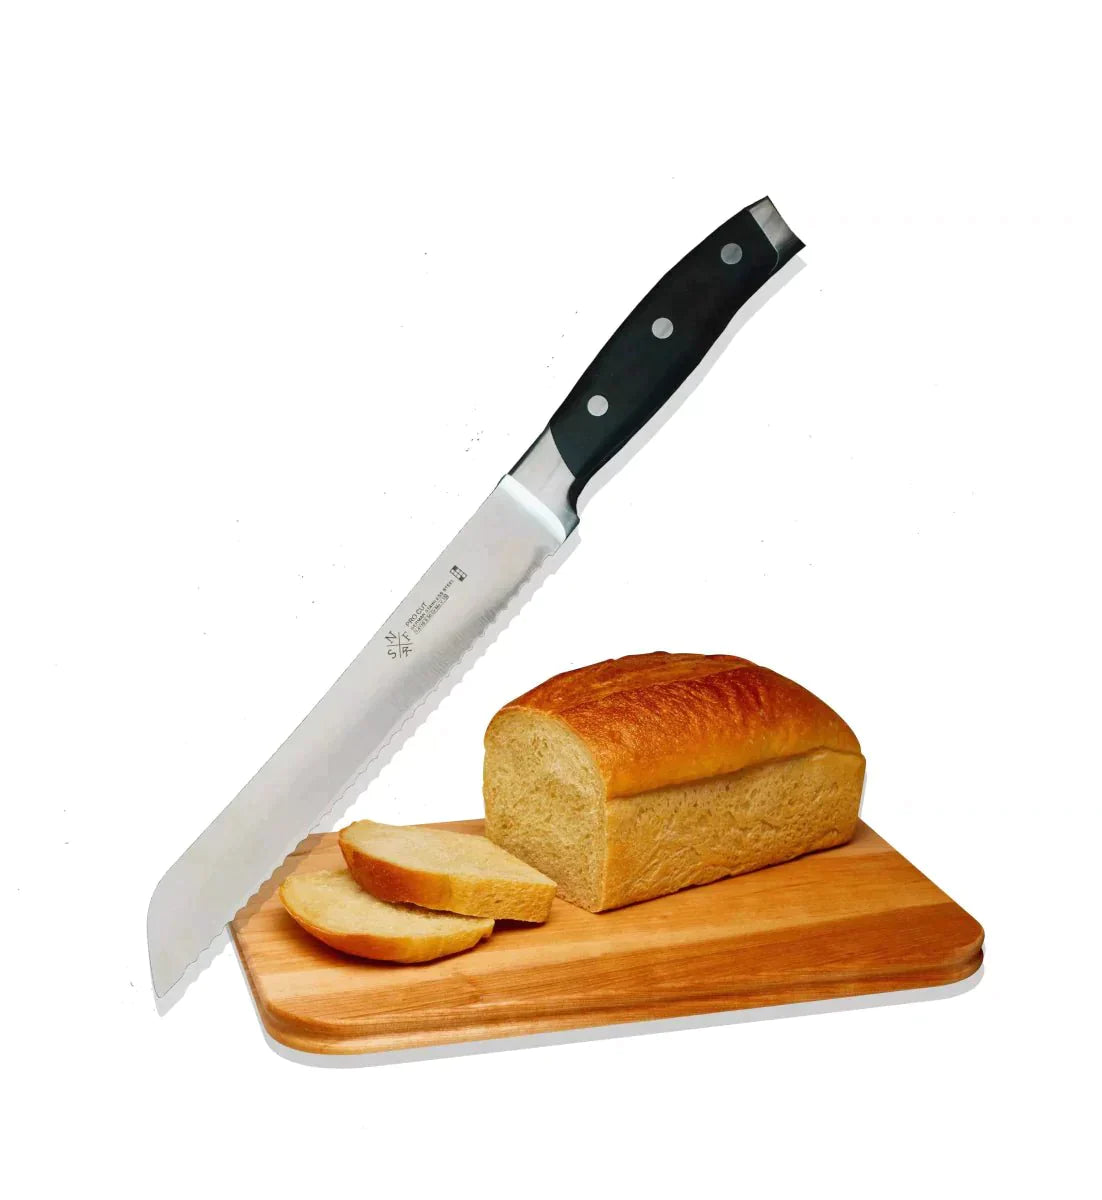 为什么 SNF Schneidteufel 刀具是每个厨房的必备品